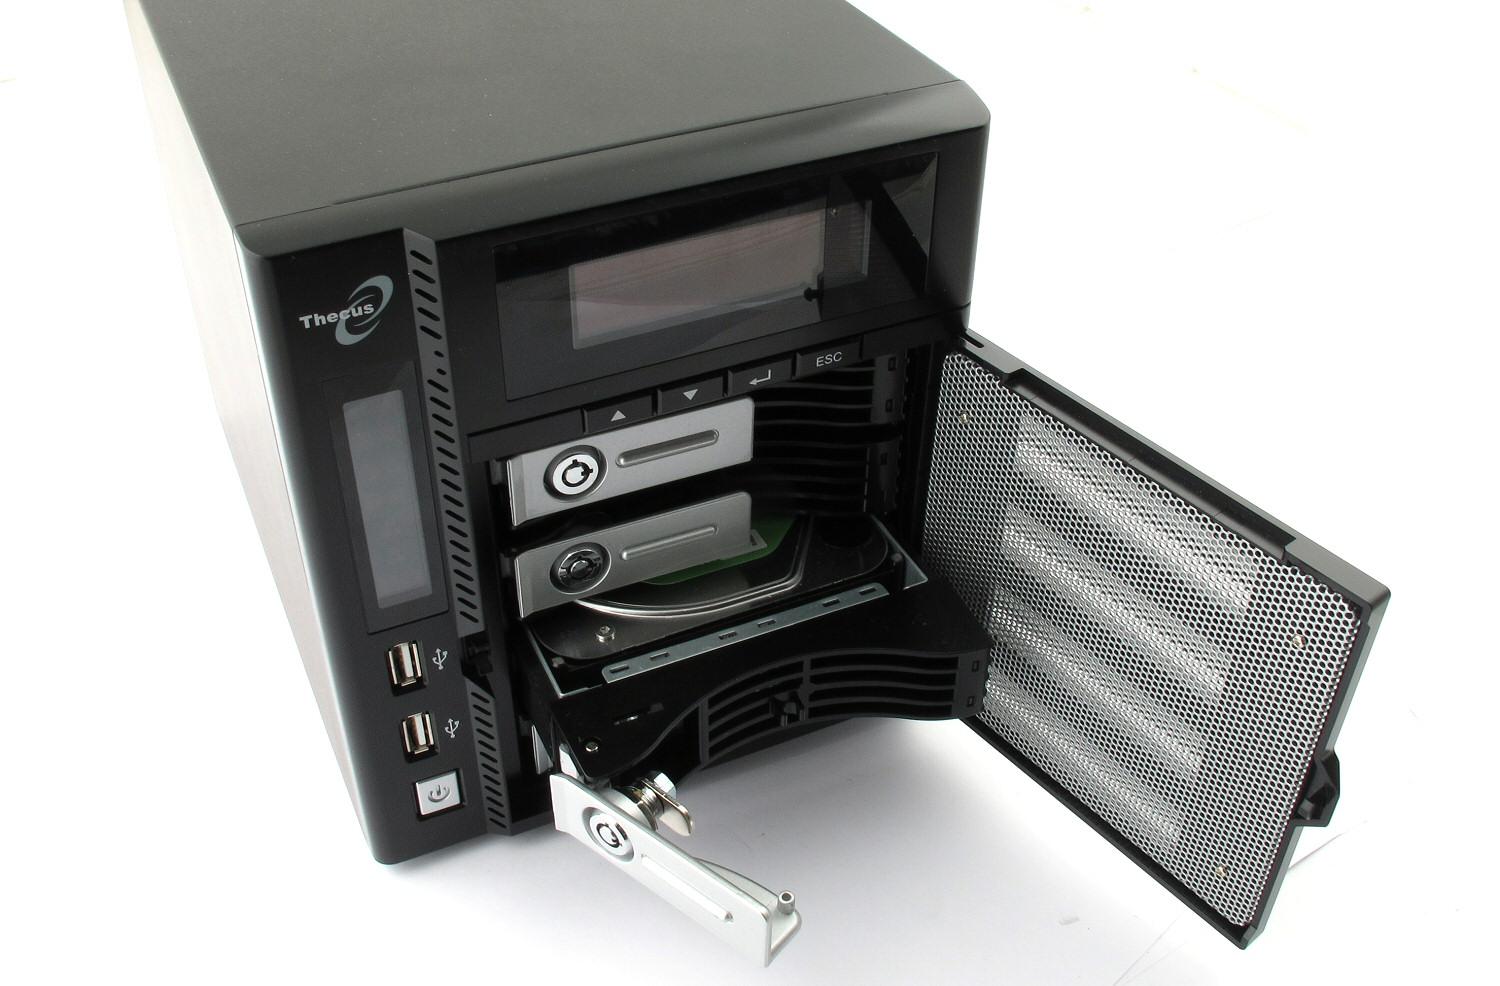 Diskrammene gjør det enkelt å legge til eller bytte ut en harddisk. Perforeringene i frontdøra gir bedre luftgjennomstrømming over diskene.